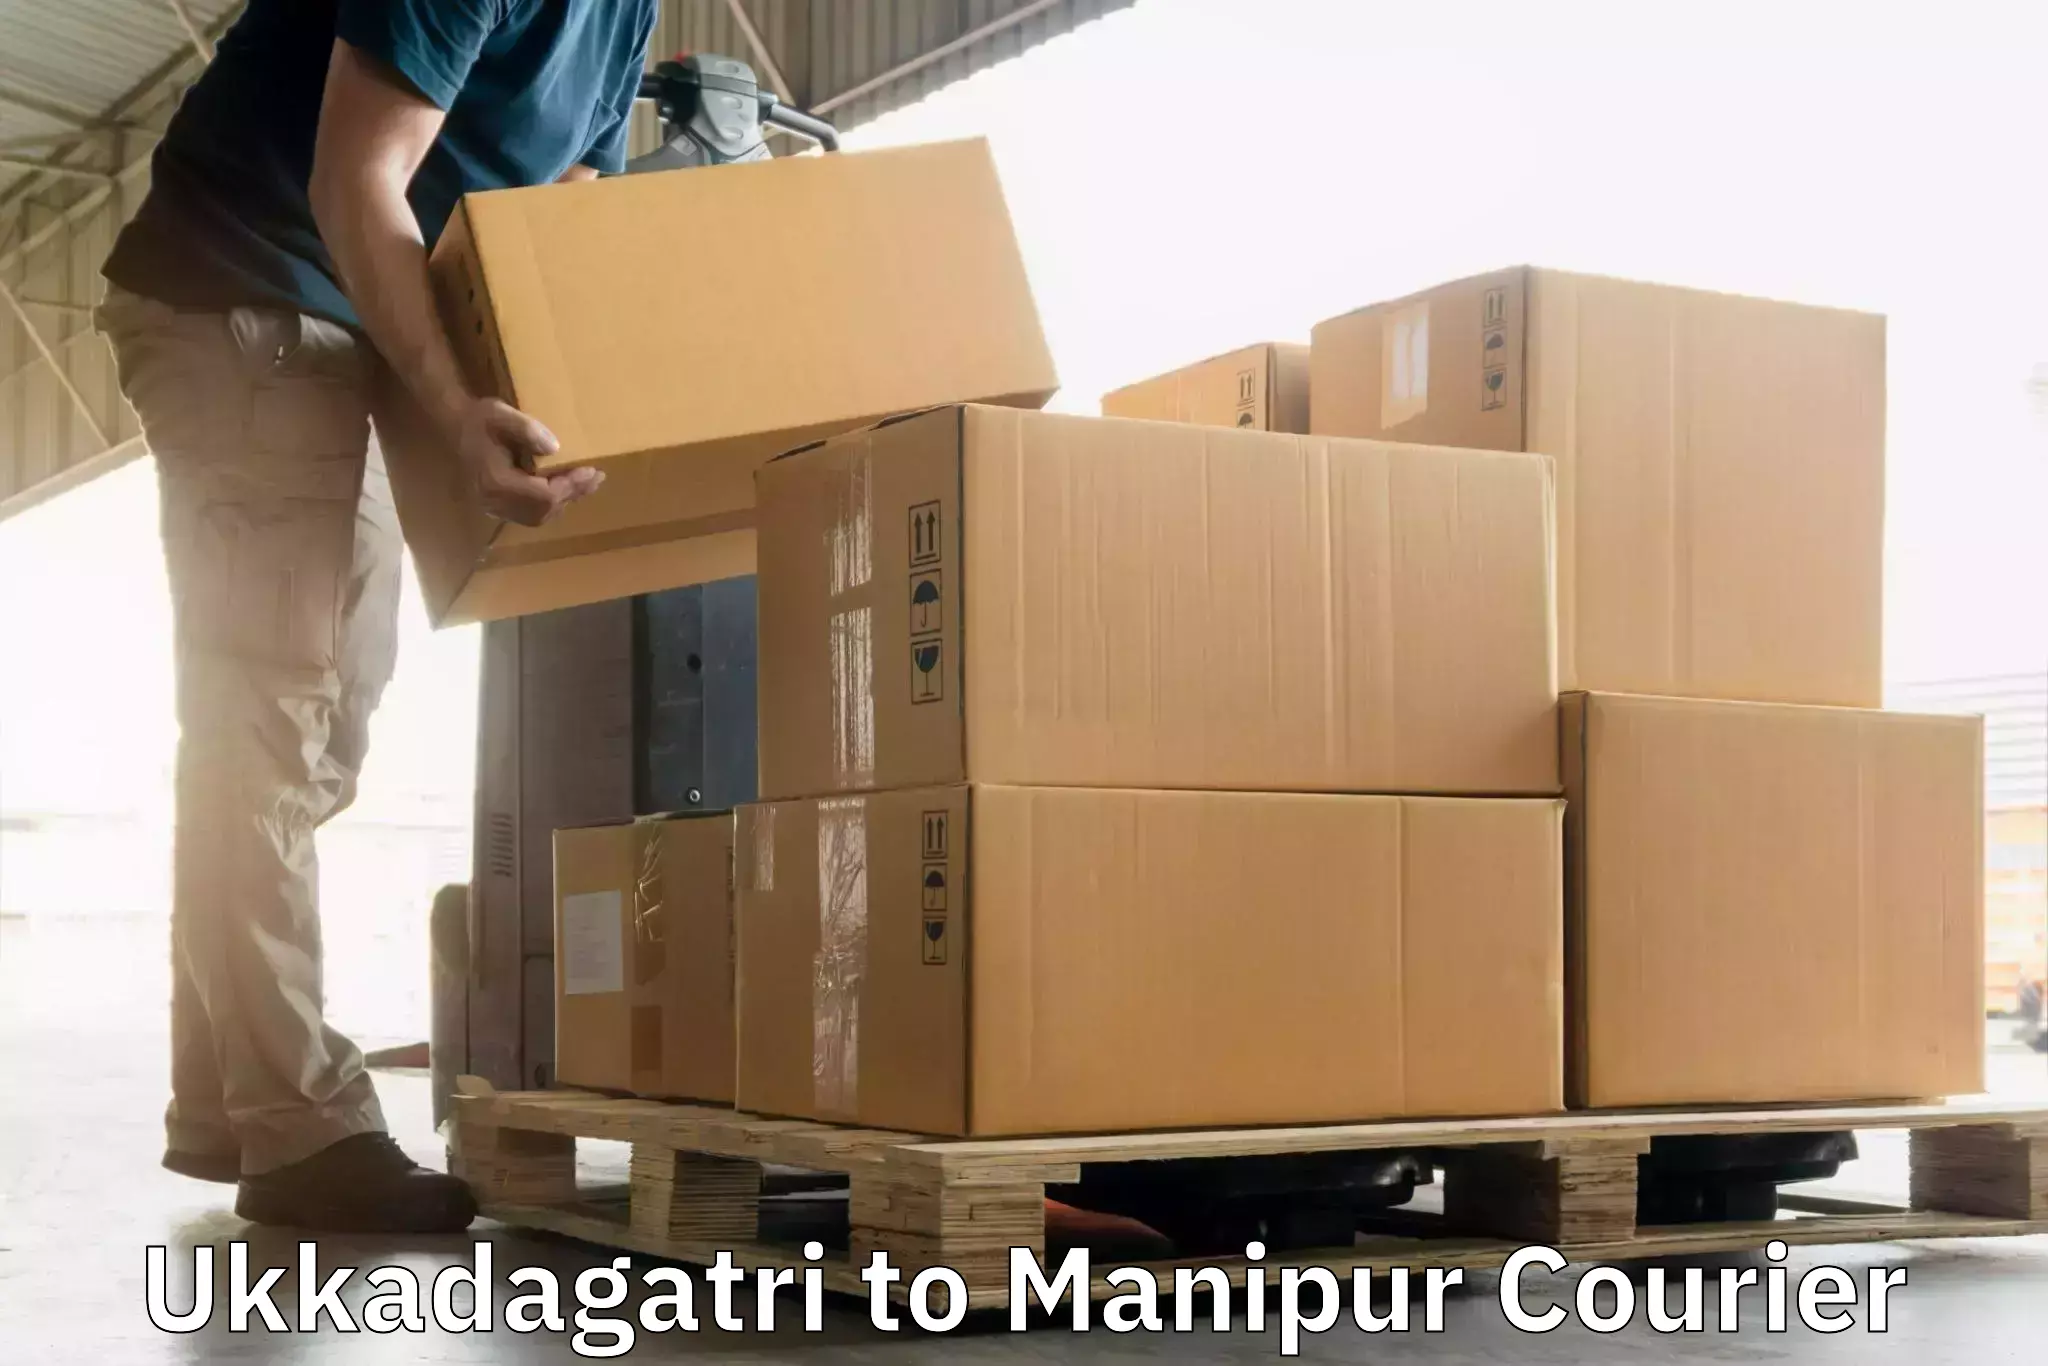 Nationwide courier service Ukkadagatri to Manipur